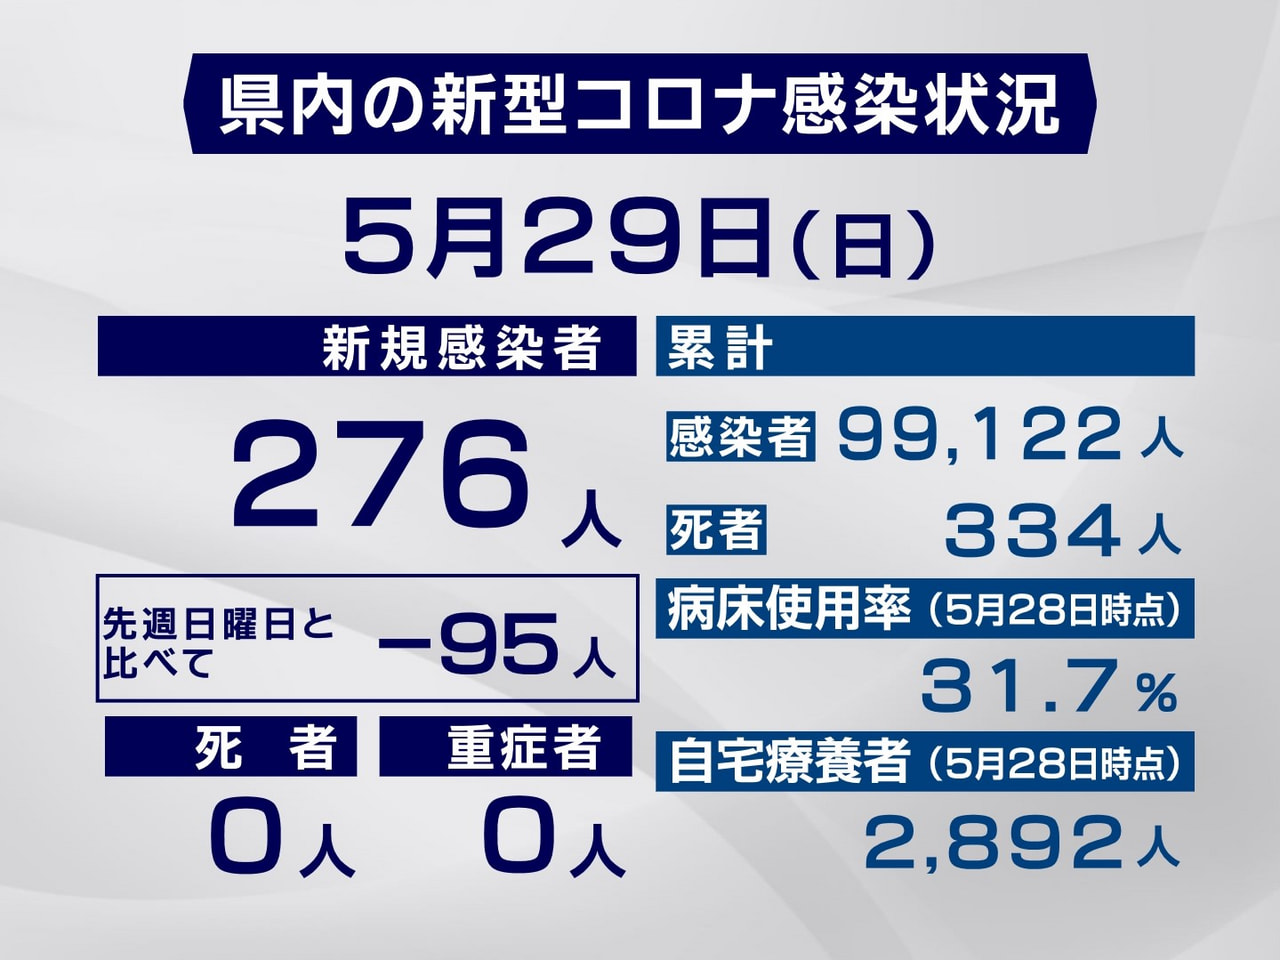 岐阜県は２９日、新型コロナウイルスの新規感染者が２７６人確認されたと発表しました...